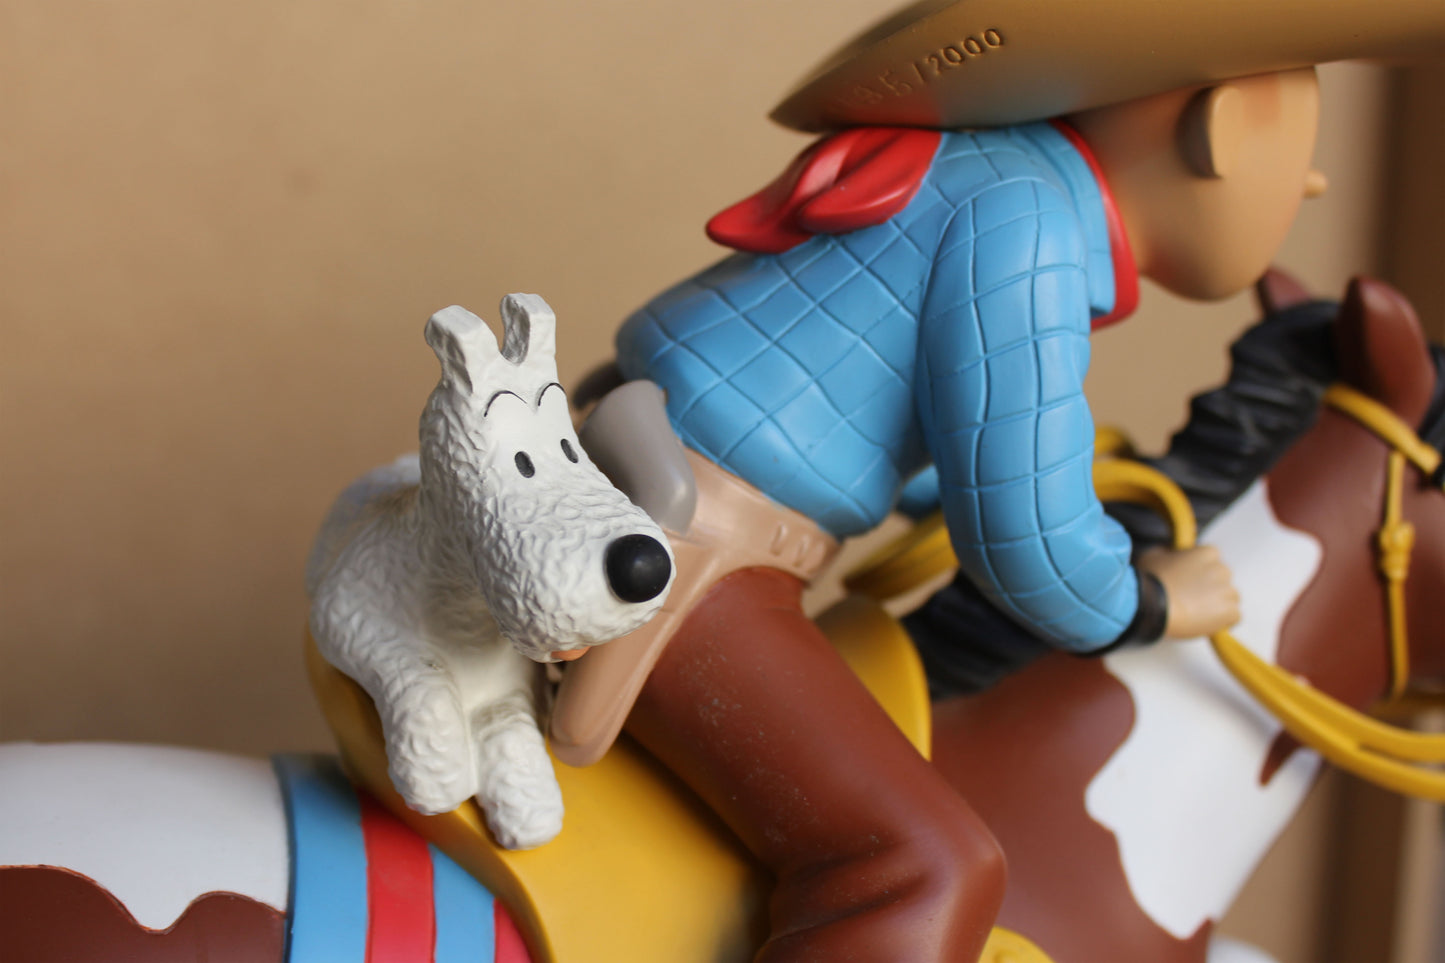 Tintin Nostalgie le cowboy à cheval